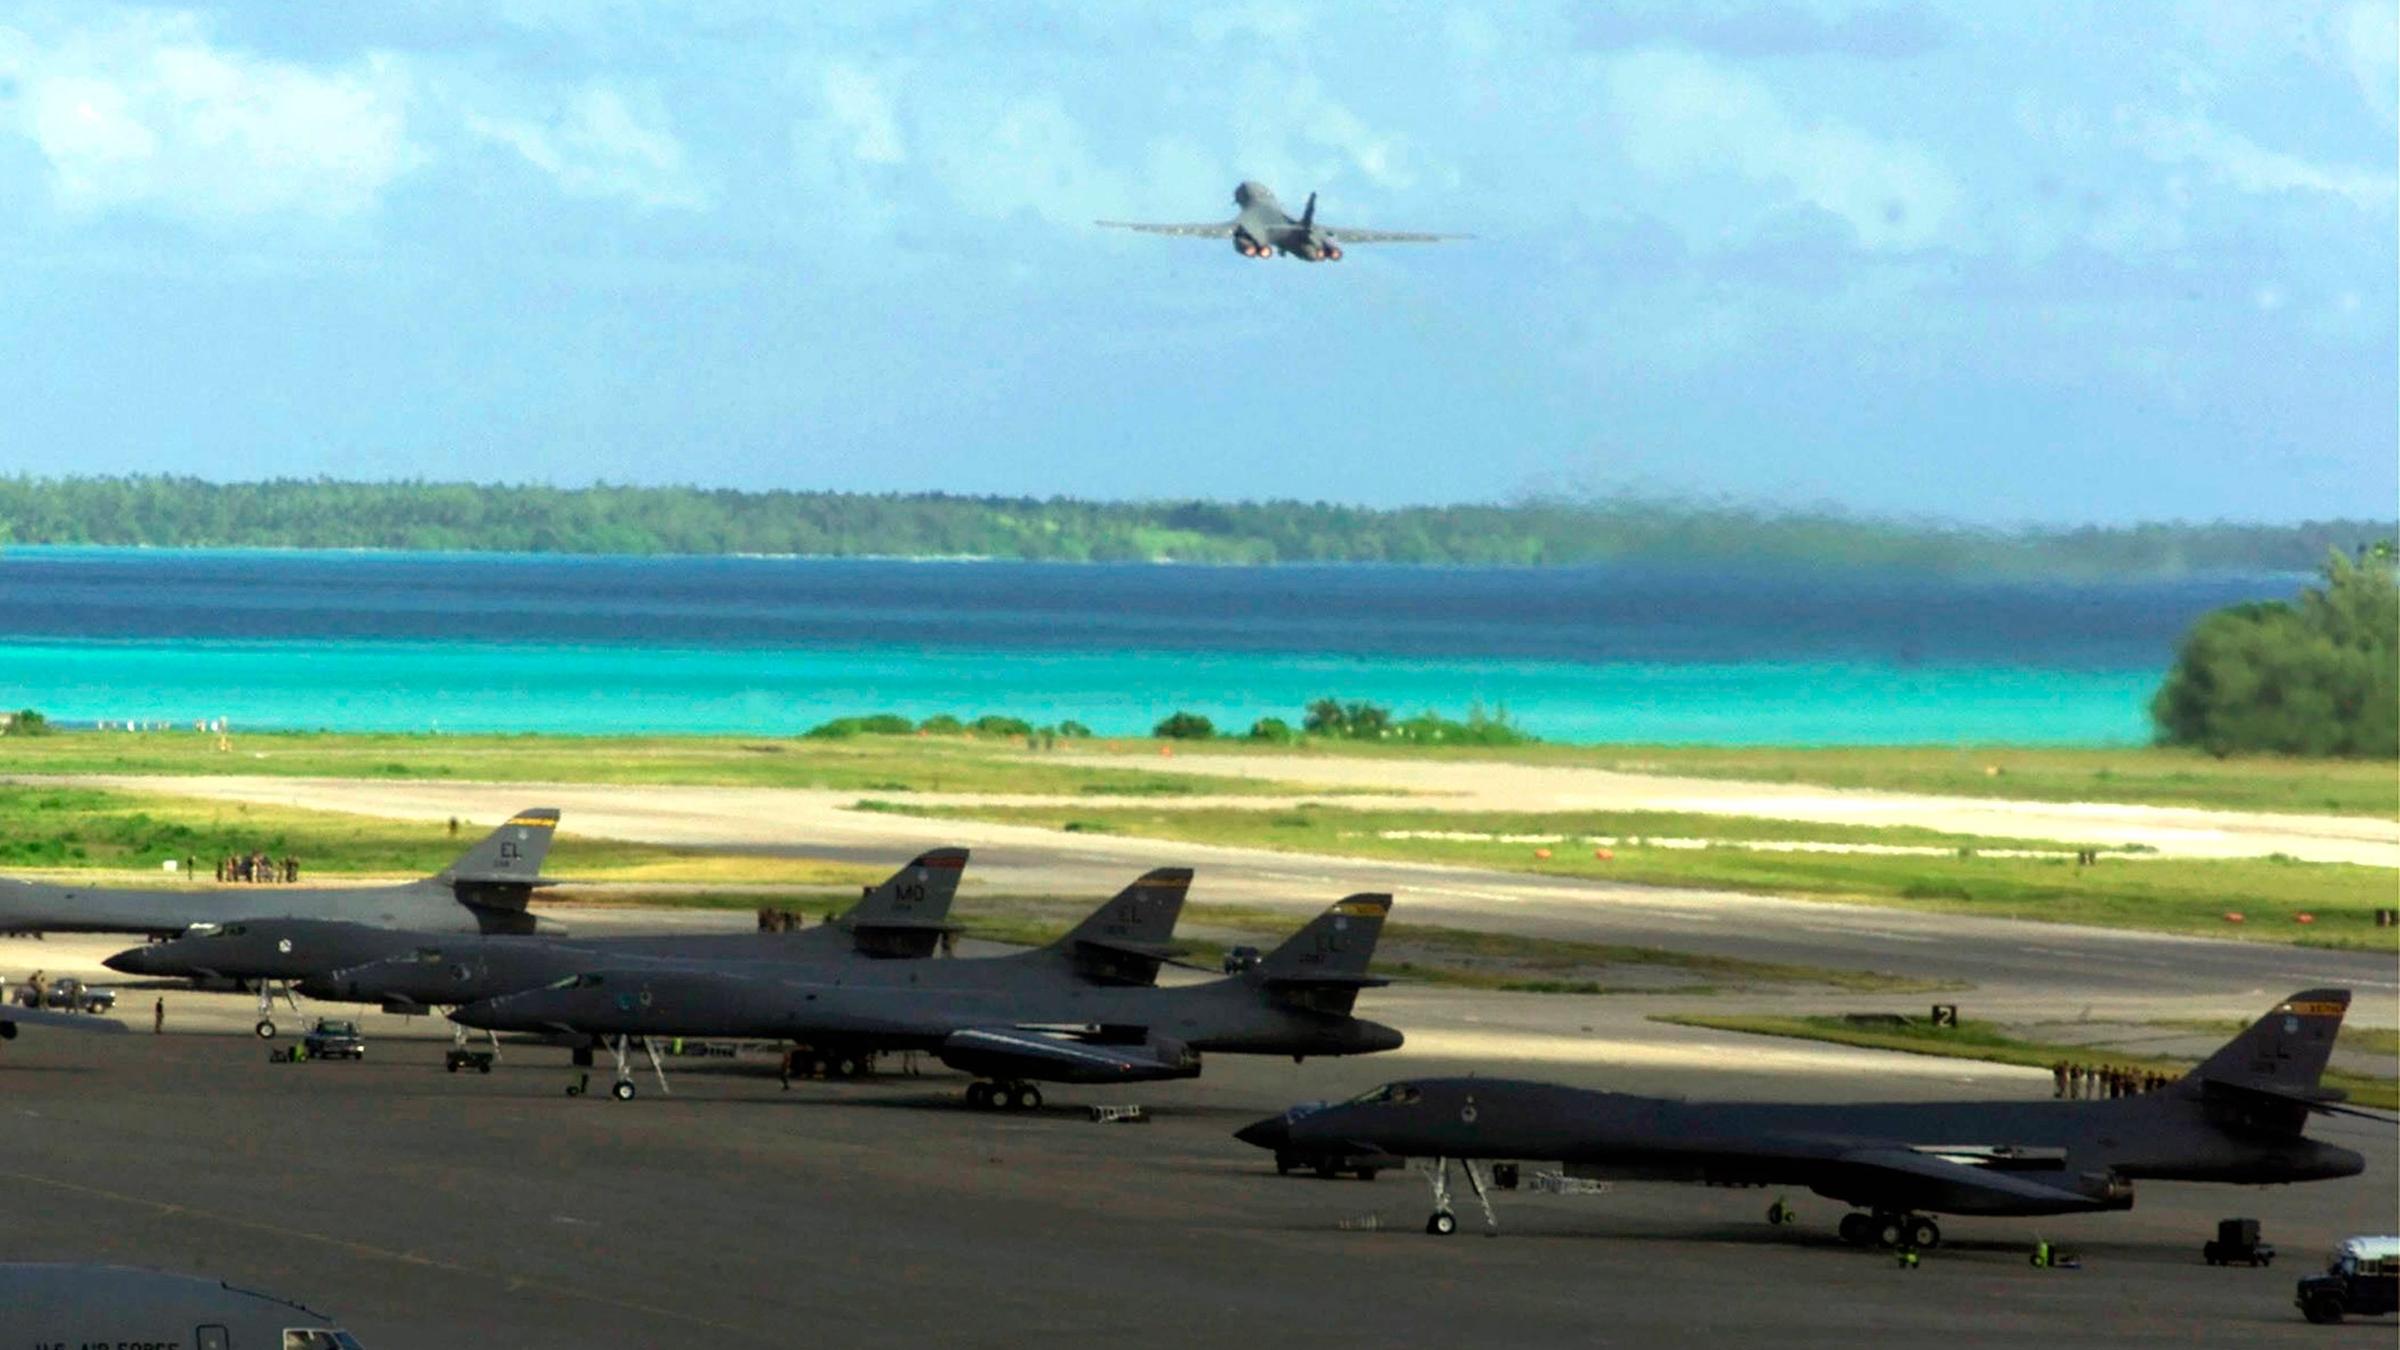 US-Aaerikanische Militärflugzeuge starten von einer Militärbasis aus. Im Hintergrund ist das türkisblaue Wasser der Lagune zu sehen.